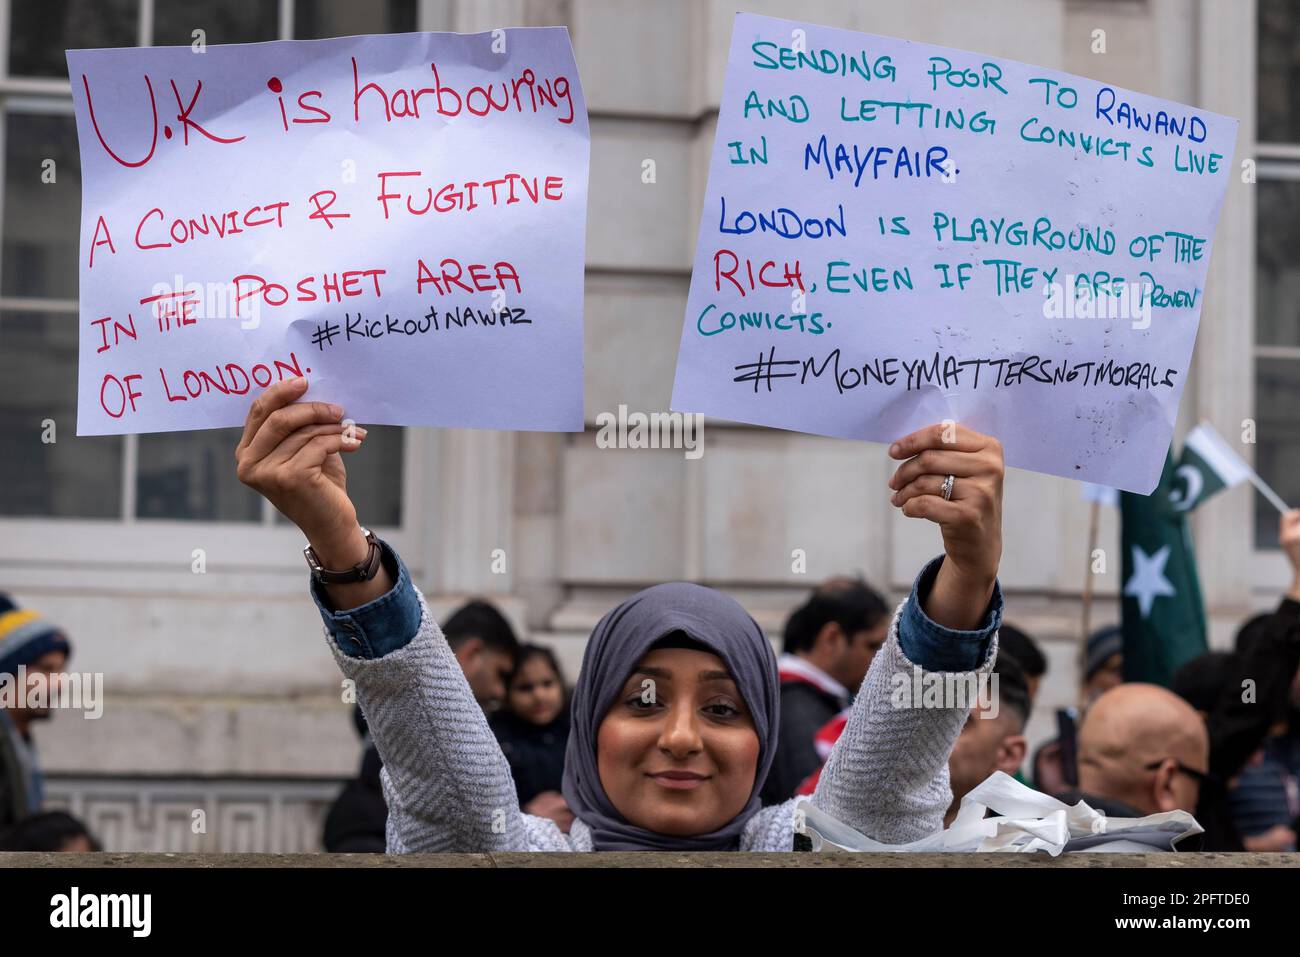 Frau mit Plakaten gegen Nawaz Sharif, der in London lebt. Beschuldigt, dem Sträfling in Mayfair Unterschlupf zu gewähren Stockfoto